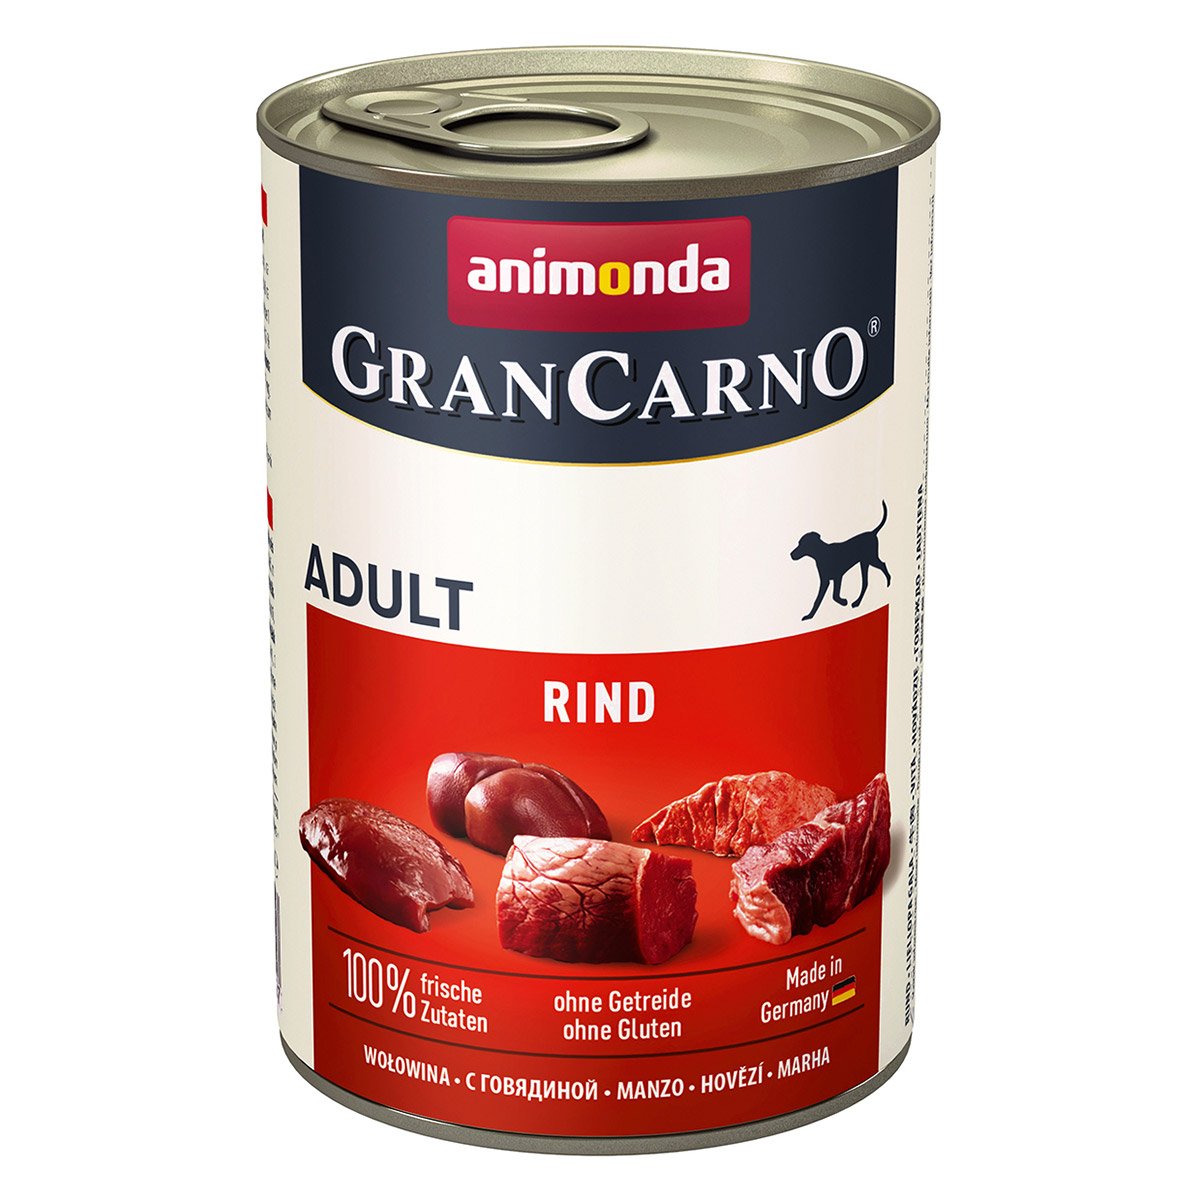 animonda GranCarno Adult Rind Pur 6x400g von animonda GranCarno